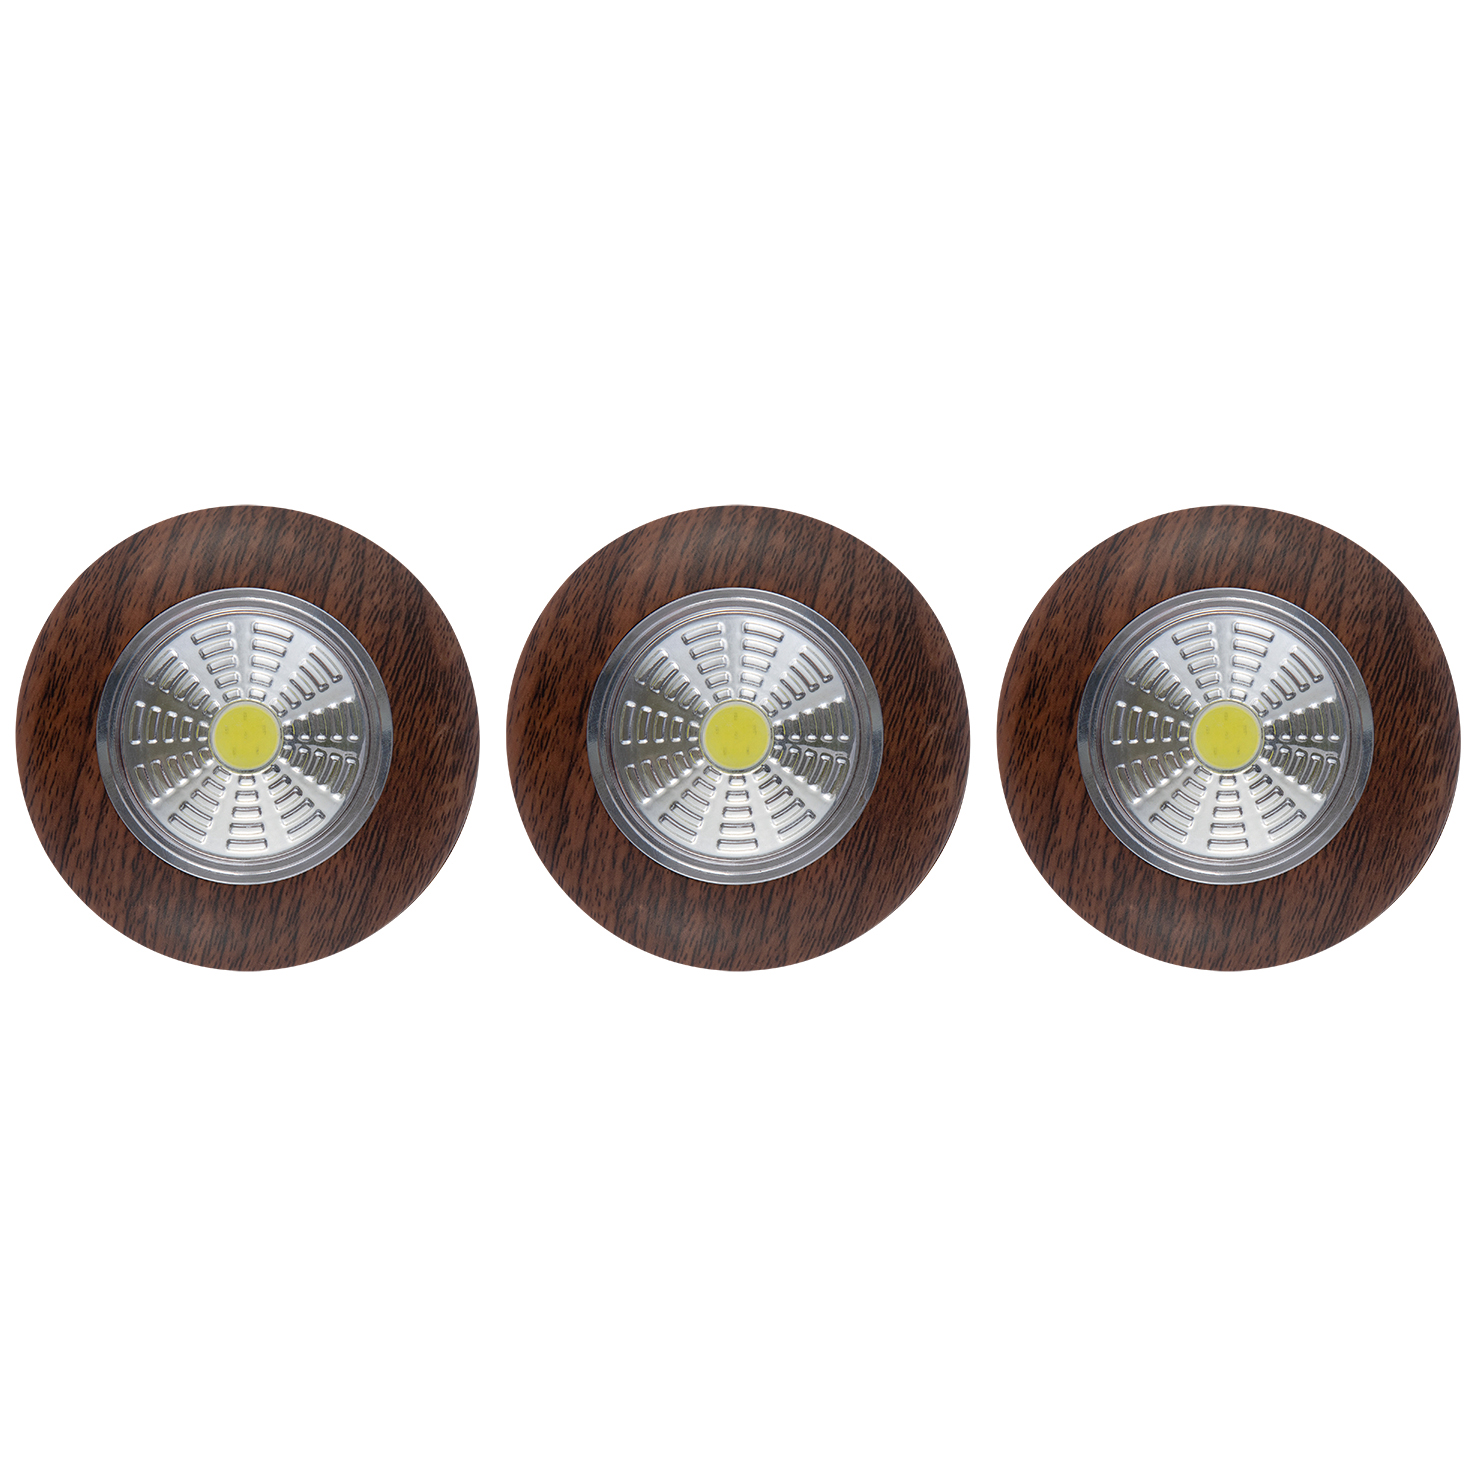 Фонарь-подсветка REV Pushlight 3Pack светодиодный коричневый 3 шт